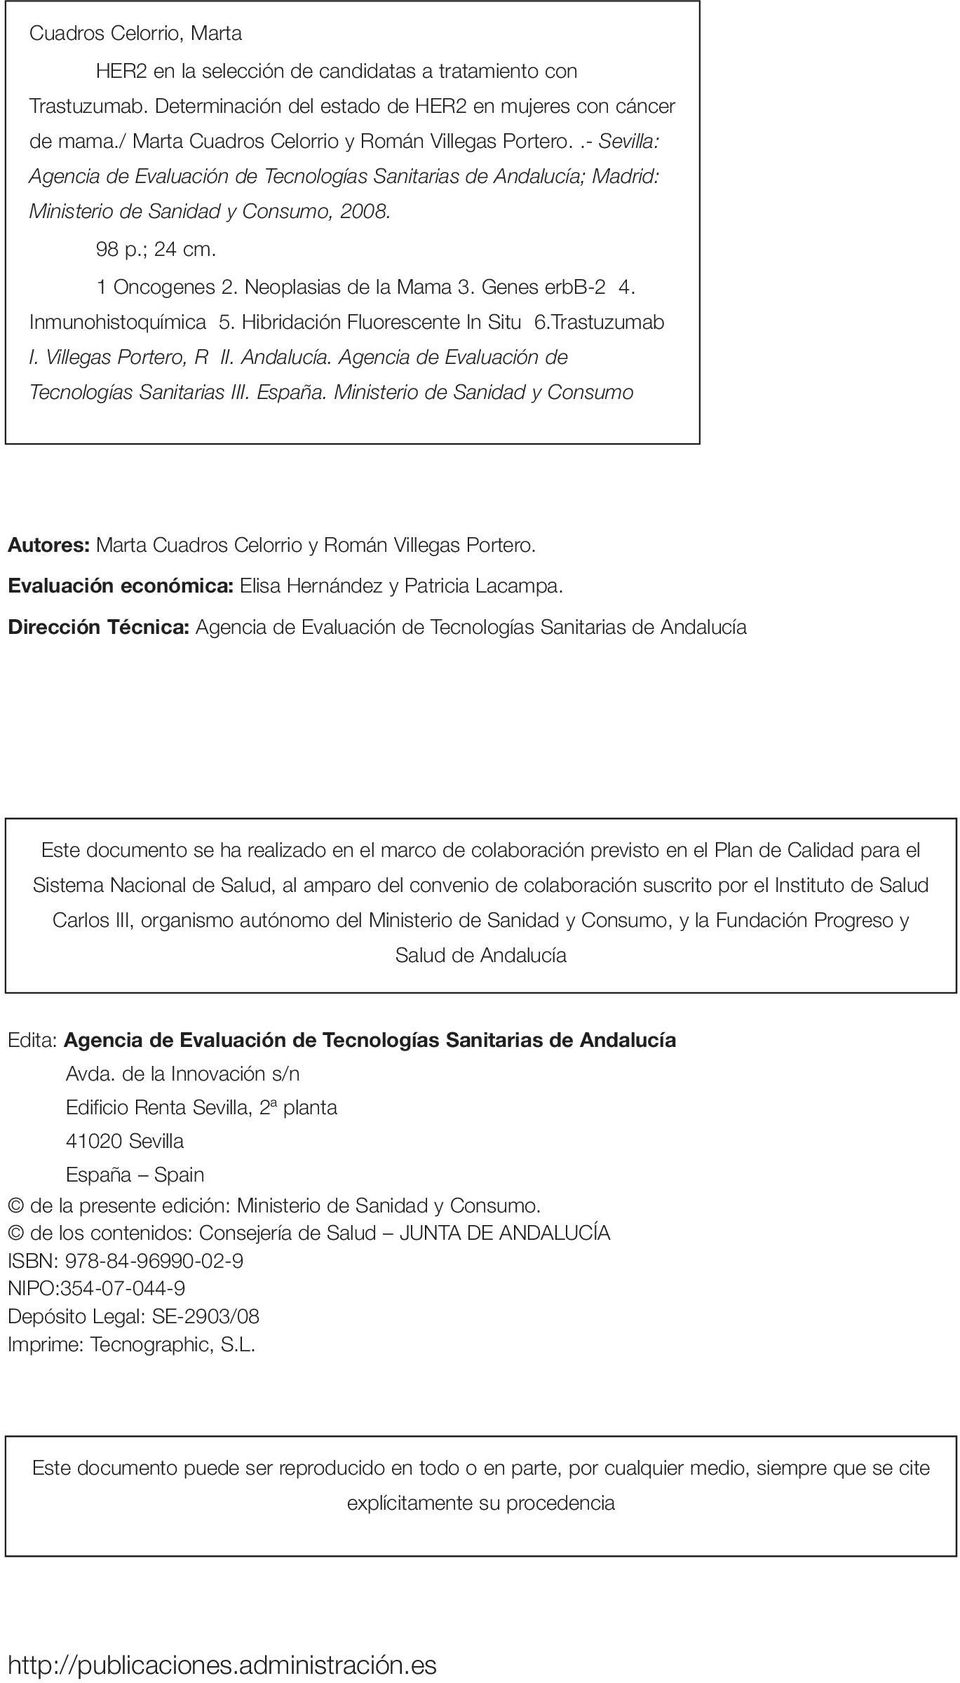 Neoplasias de la Mama 3. Genes erbb-2 4. Inmunohistoquímica 5. Hibridación Fluorescente In Situ 6.Trastuzumab I. Villegas Portero, R II. Andalucía. Agencia de Evaluación de Tecnologías Sanitarias III.